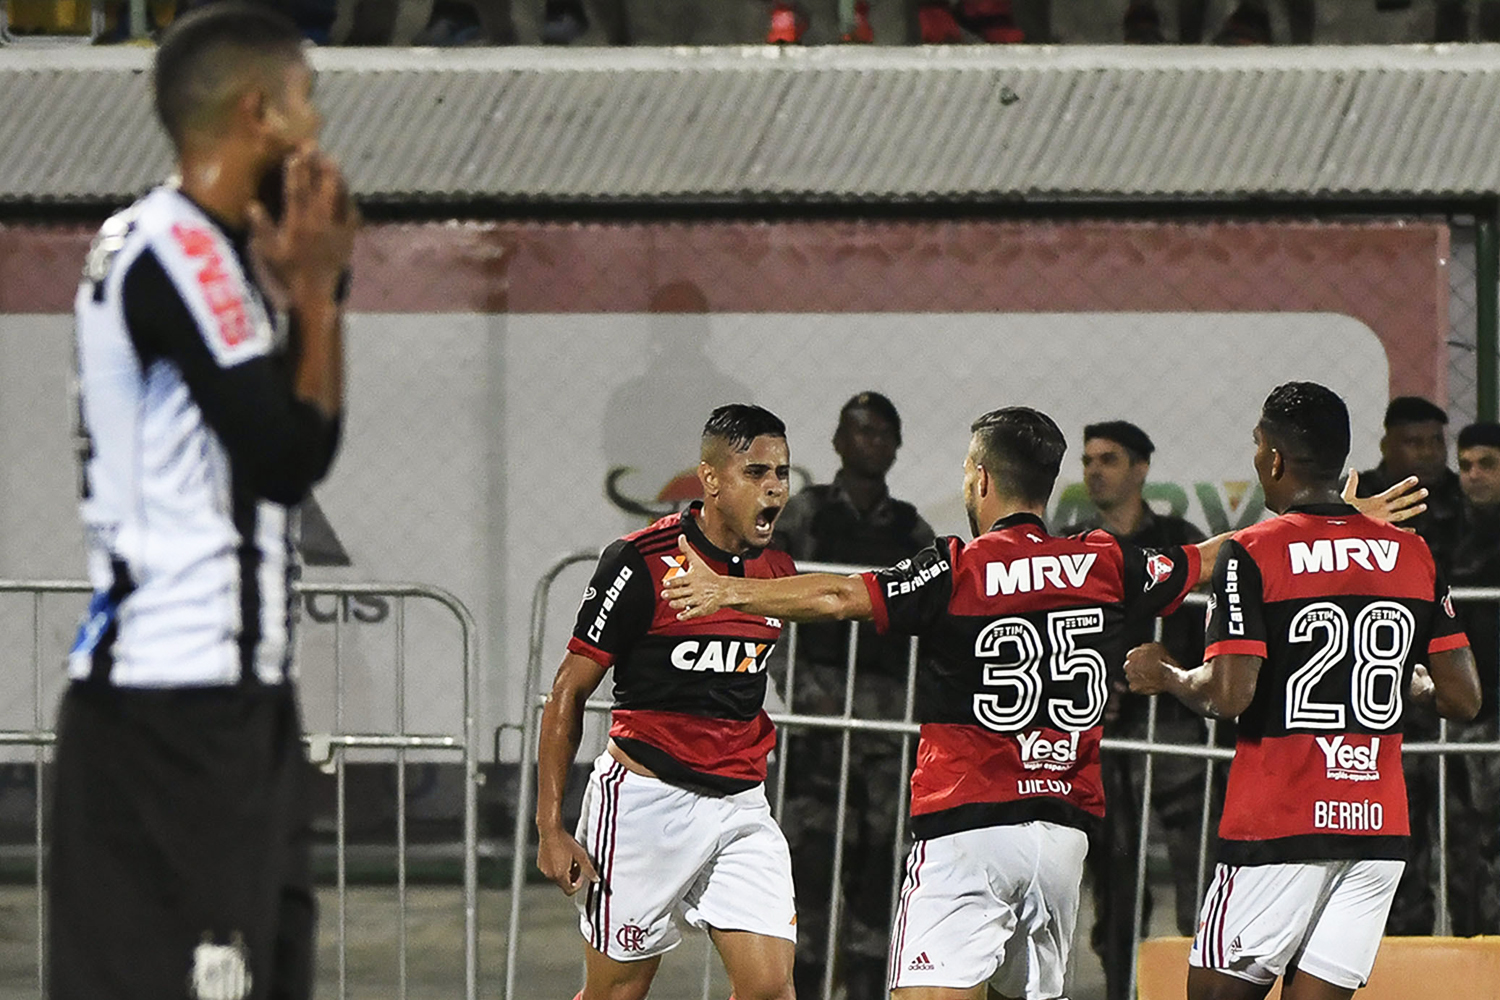 Copa do Brasil: em vantagem, Flamengo enfrenta o Santos | VEJA